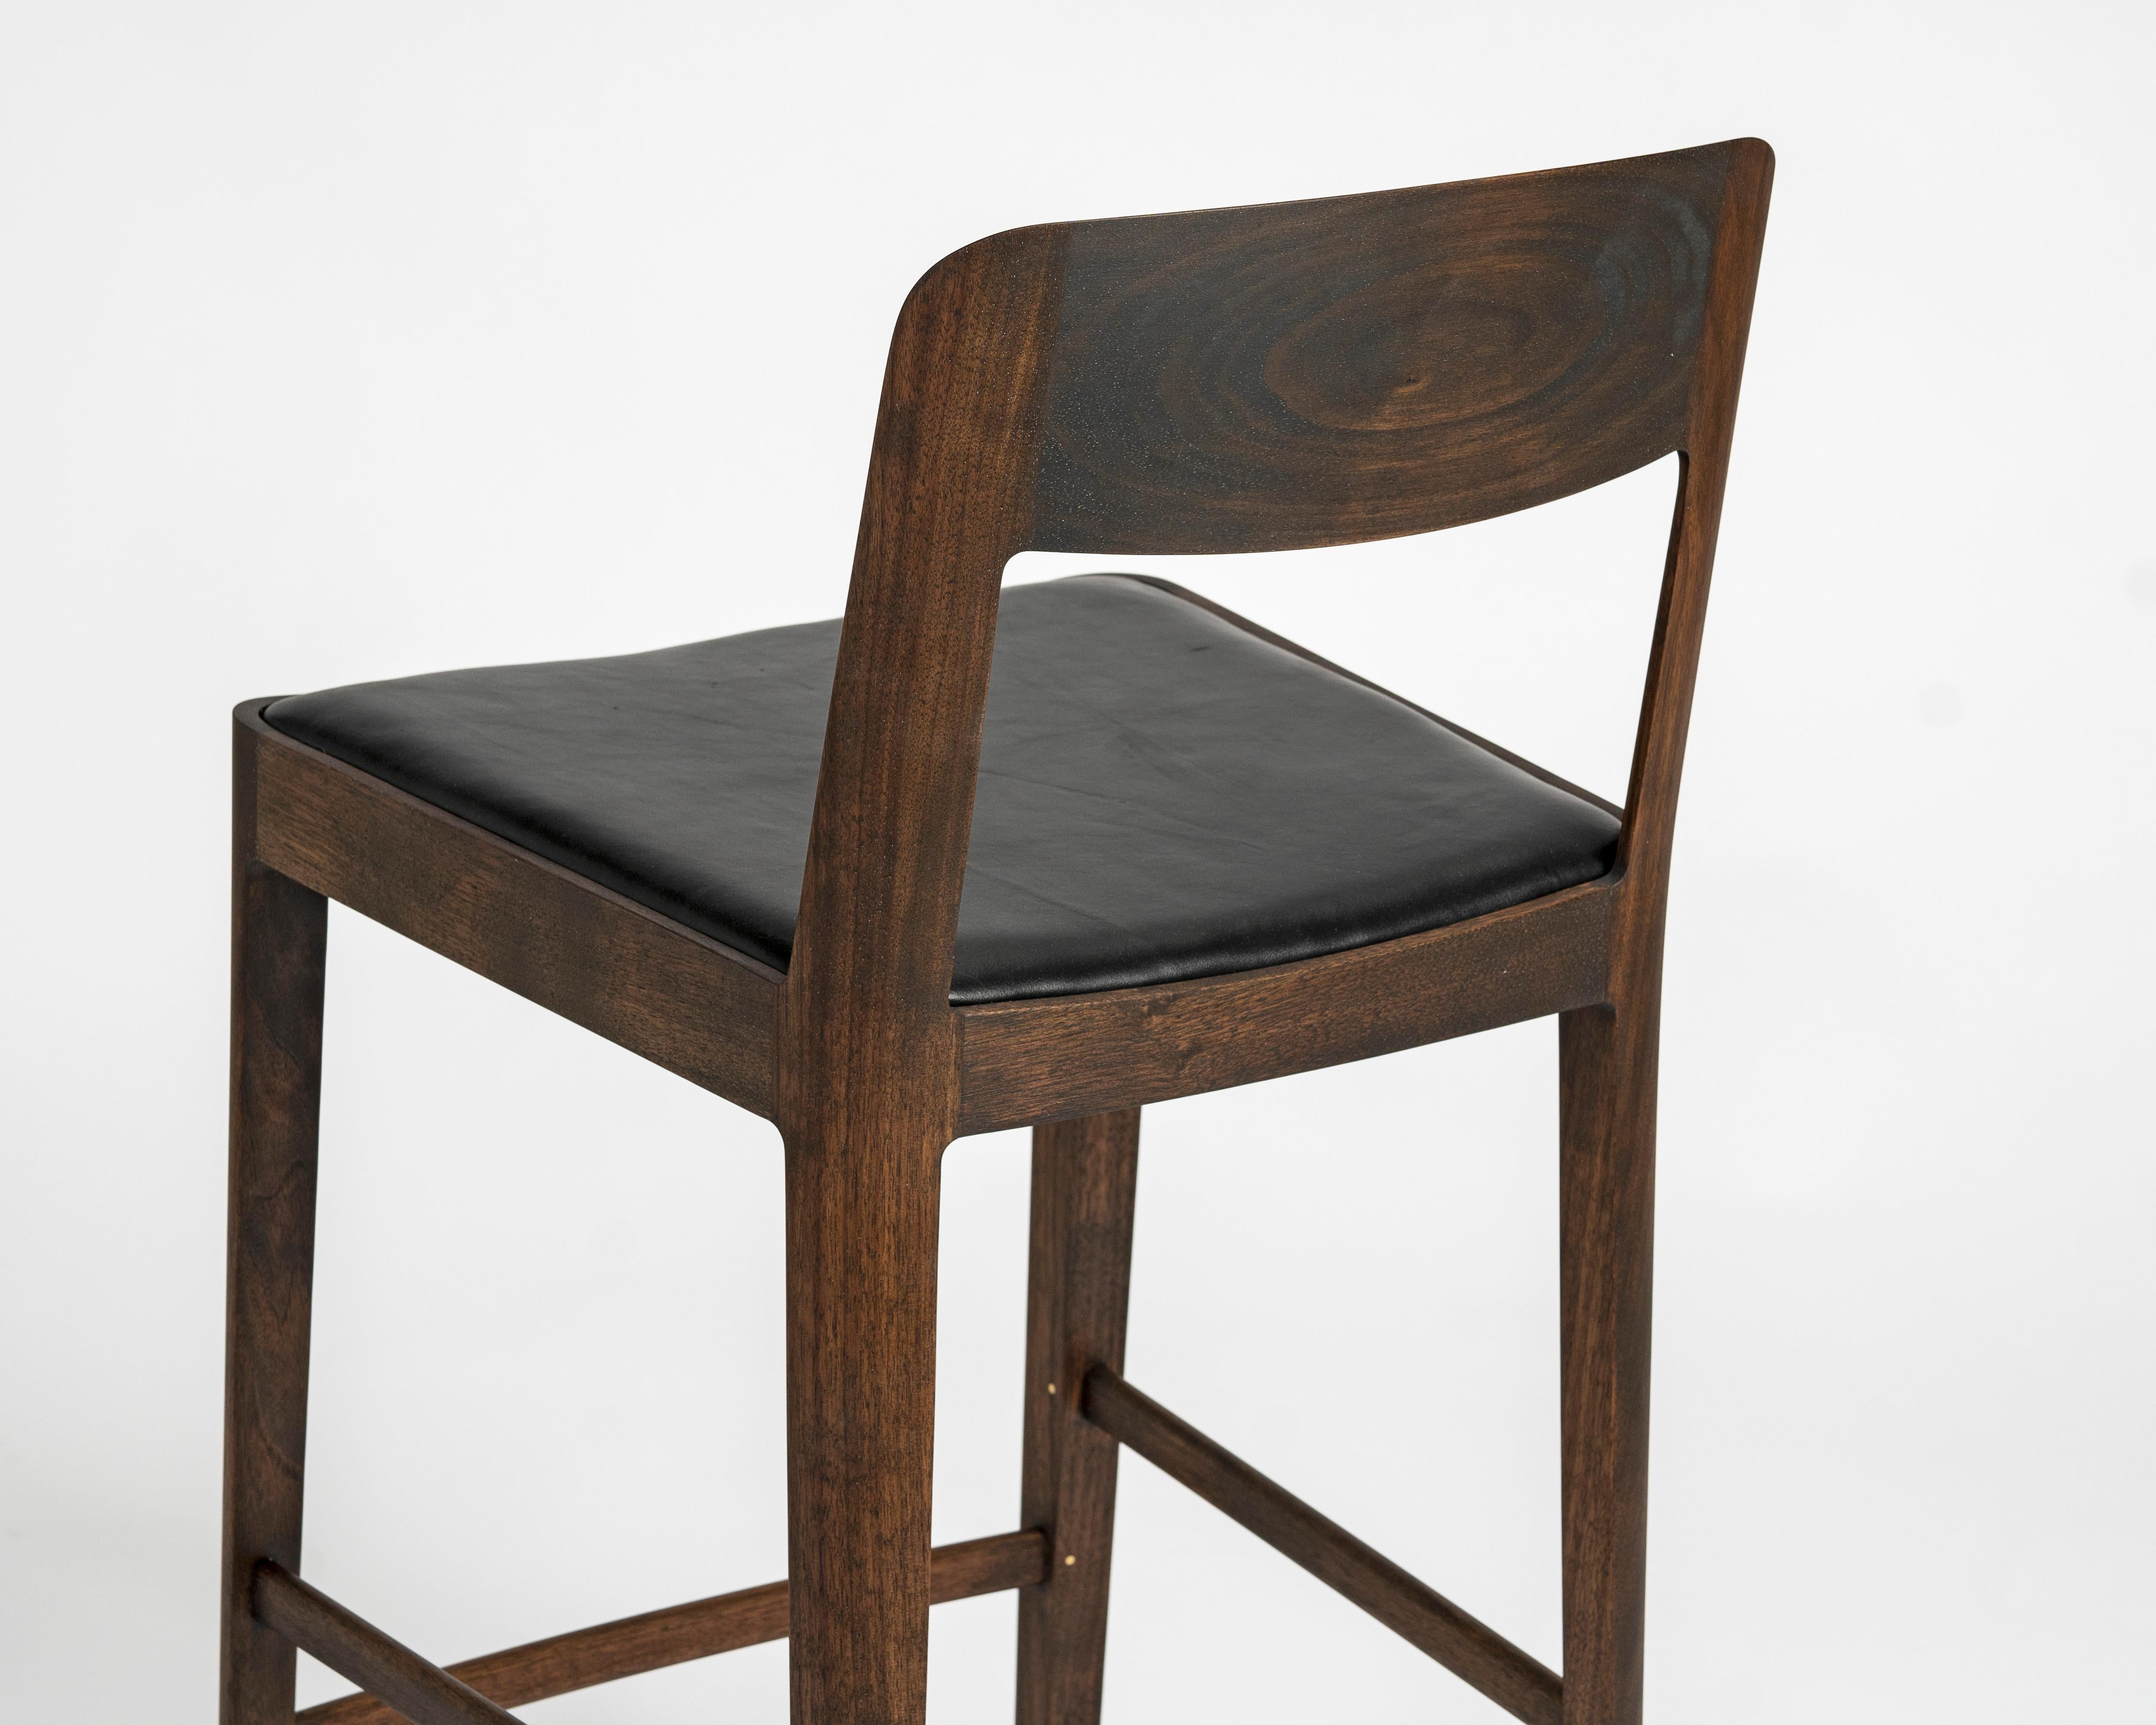 Notre collection de sièges Linea témoigne d'un attachement à la légèreté et à l'aptitude des matériaux. Une structure sinueuse aux proportions élégantes, réticente mais riche en détails délicats. 

Linea est disponible dans des versions à hauteur